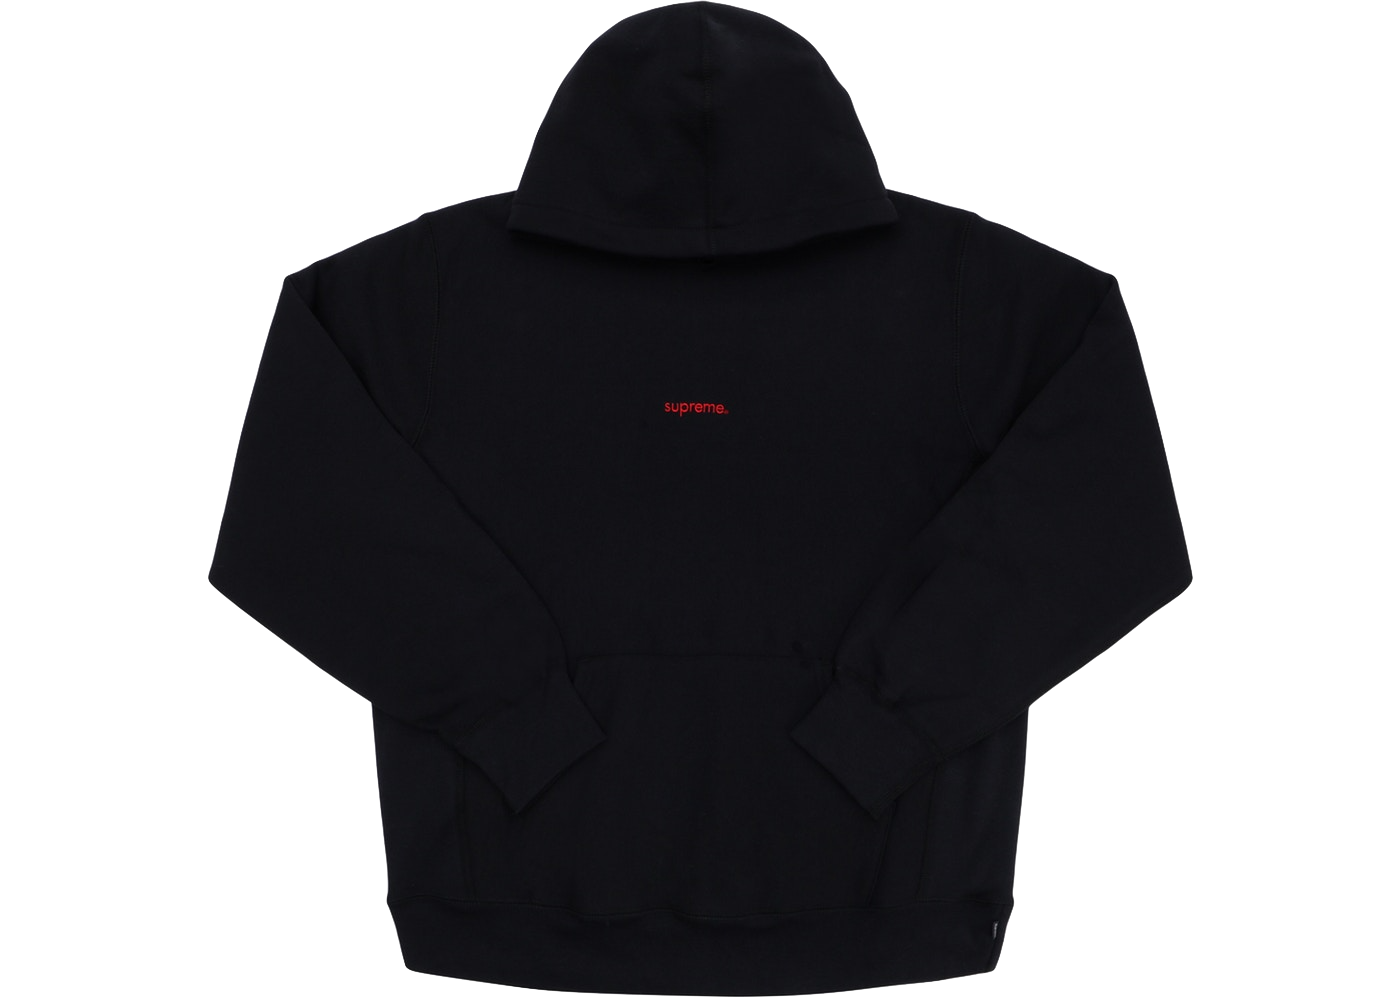 supreme trademark hooded sweatshirt